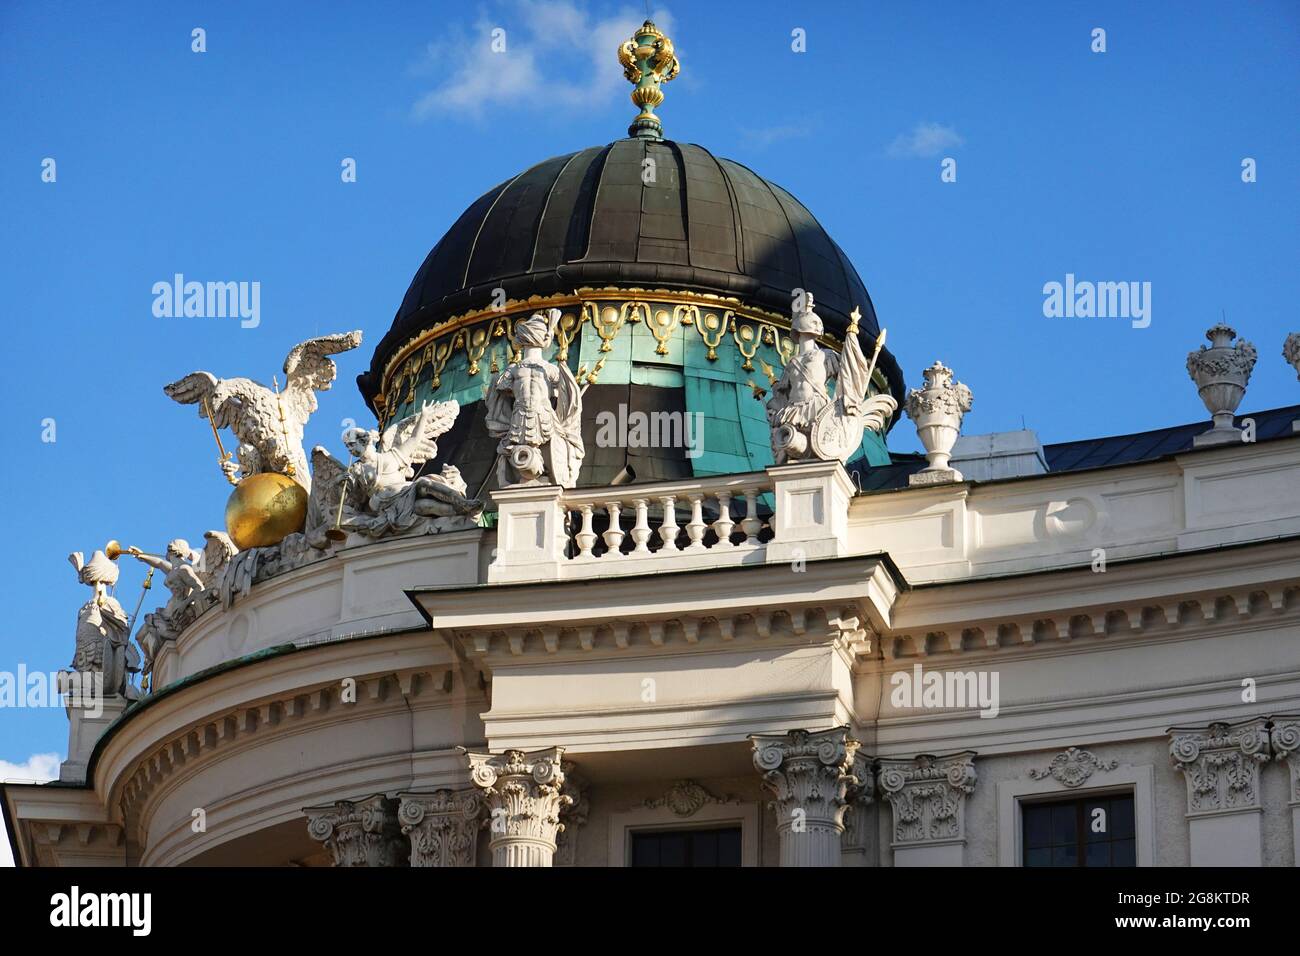 Wien Hofburg, Architektur in Wien, die Wiener Hofburg ist einer der größten Palastkomplexe der Welt Foto Stock